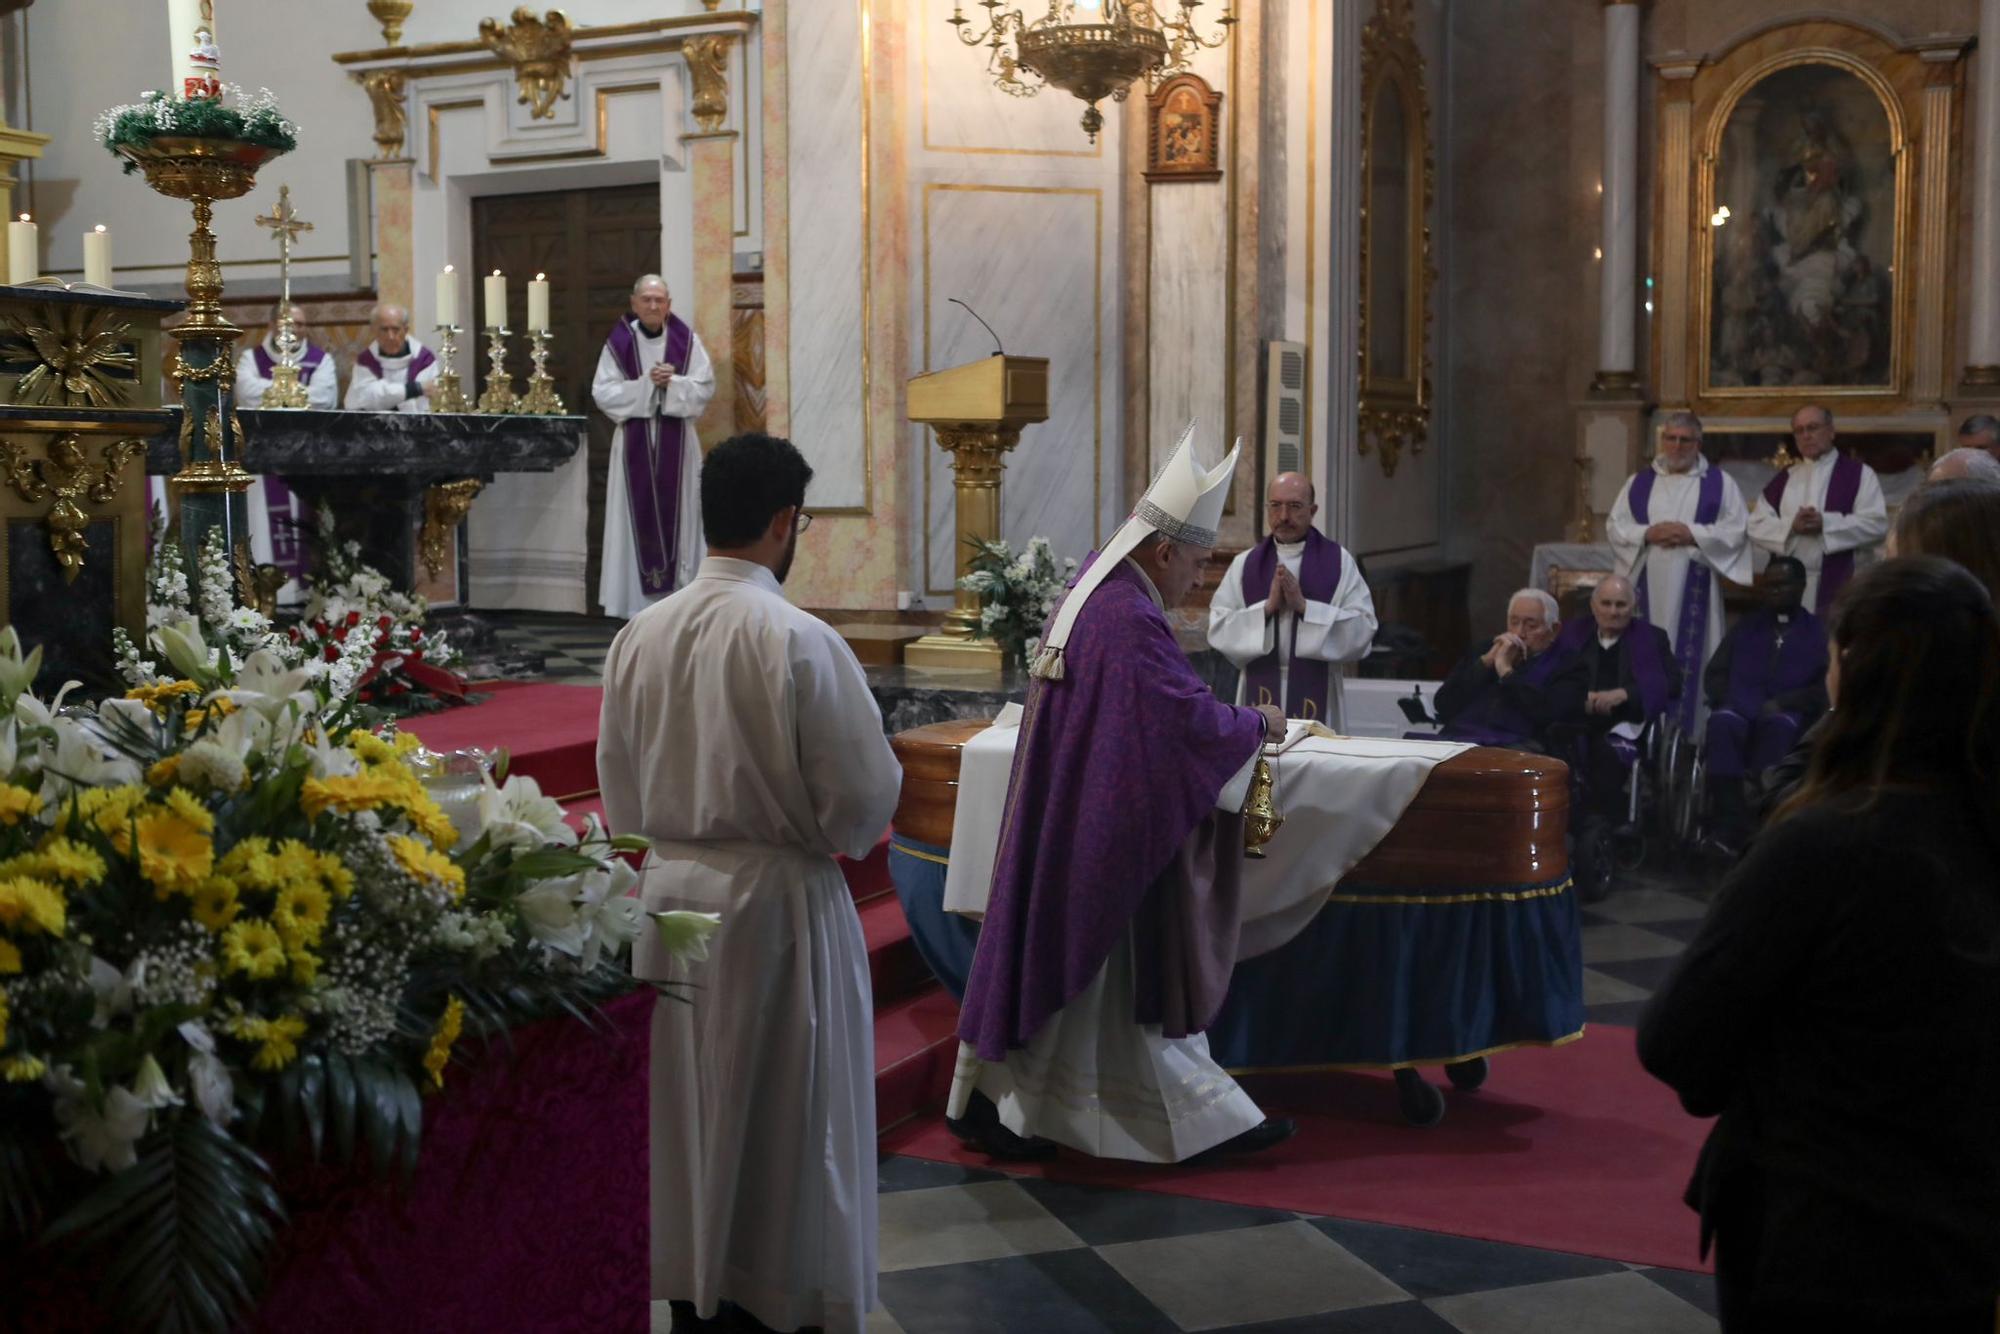 Funeral de Emili Marin, director de la revista Sao y sacerdote